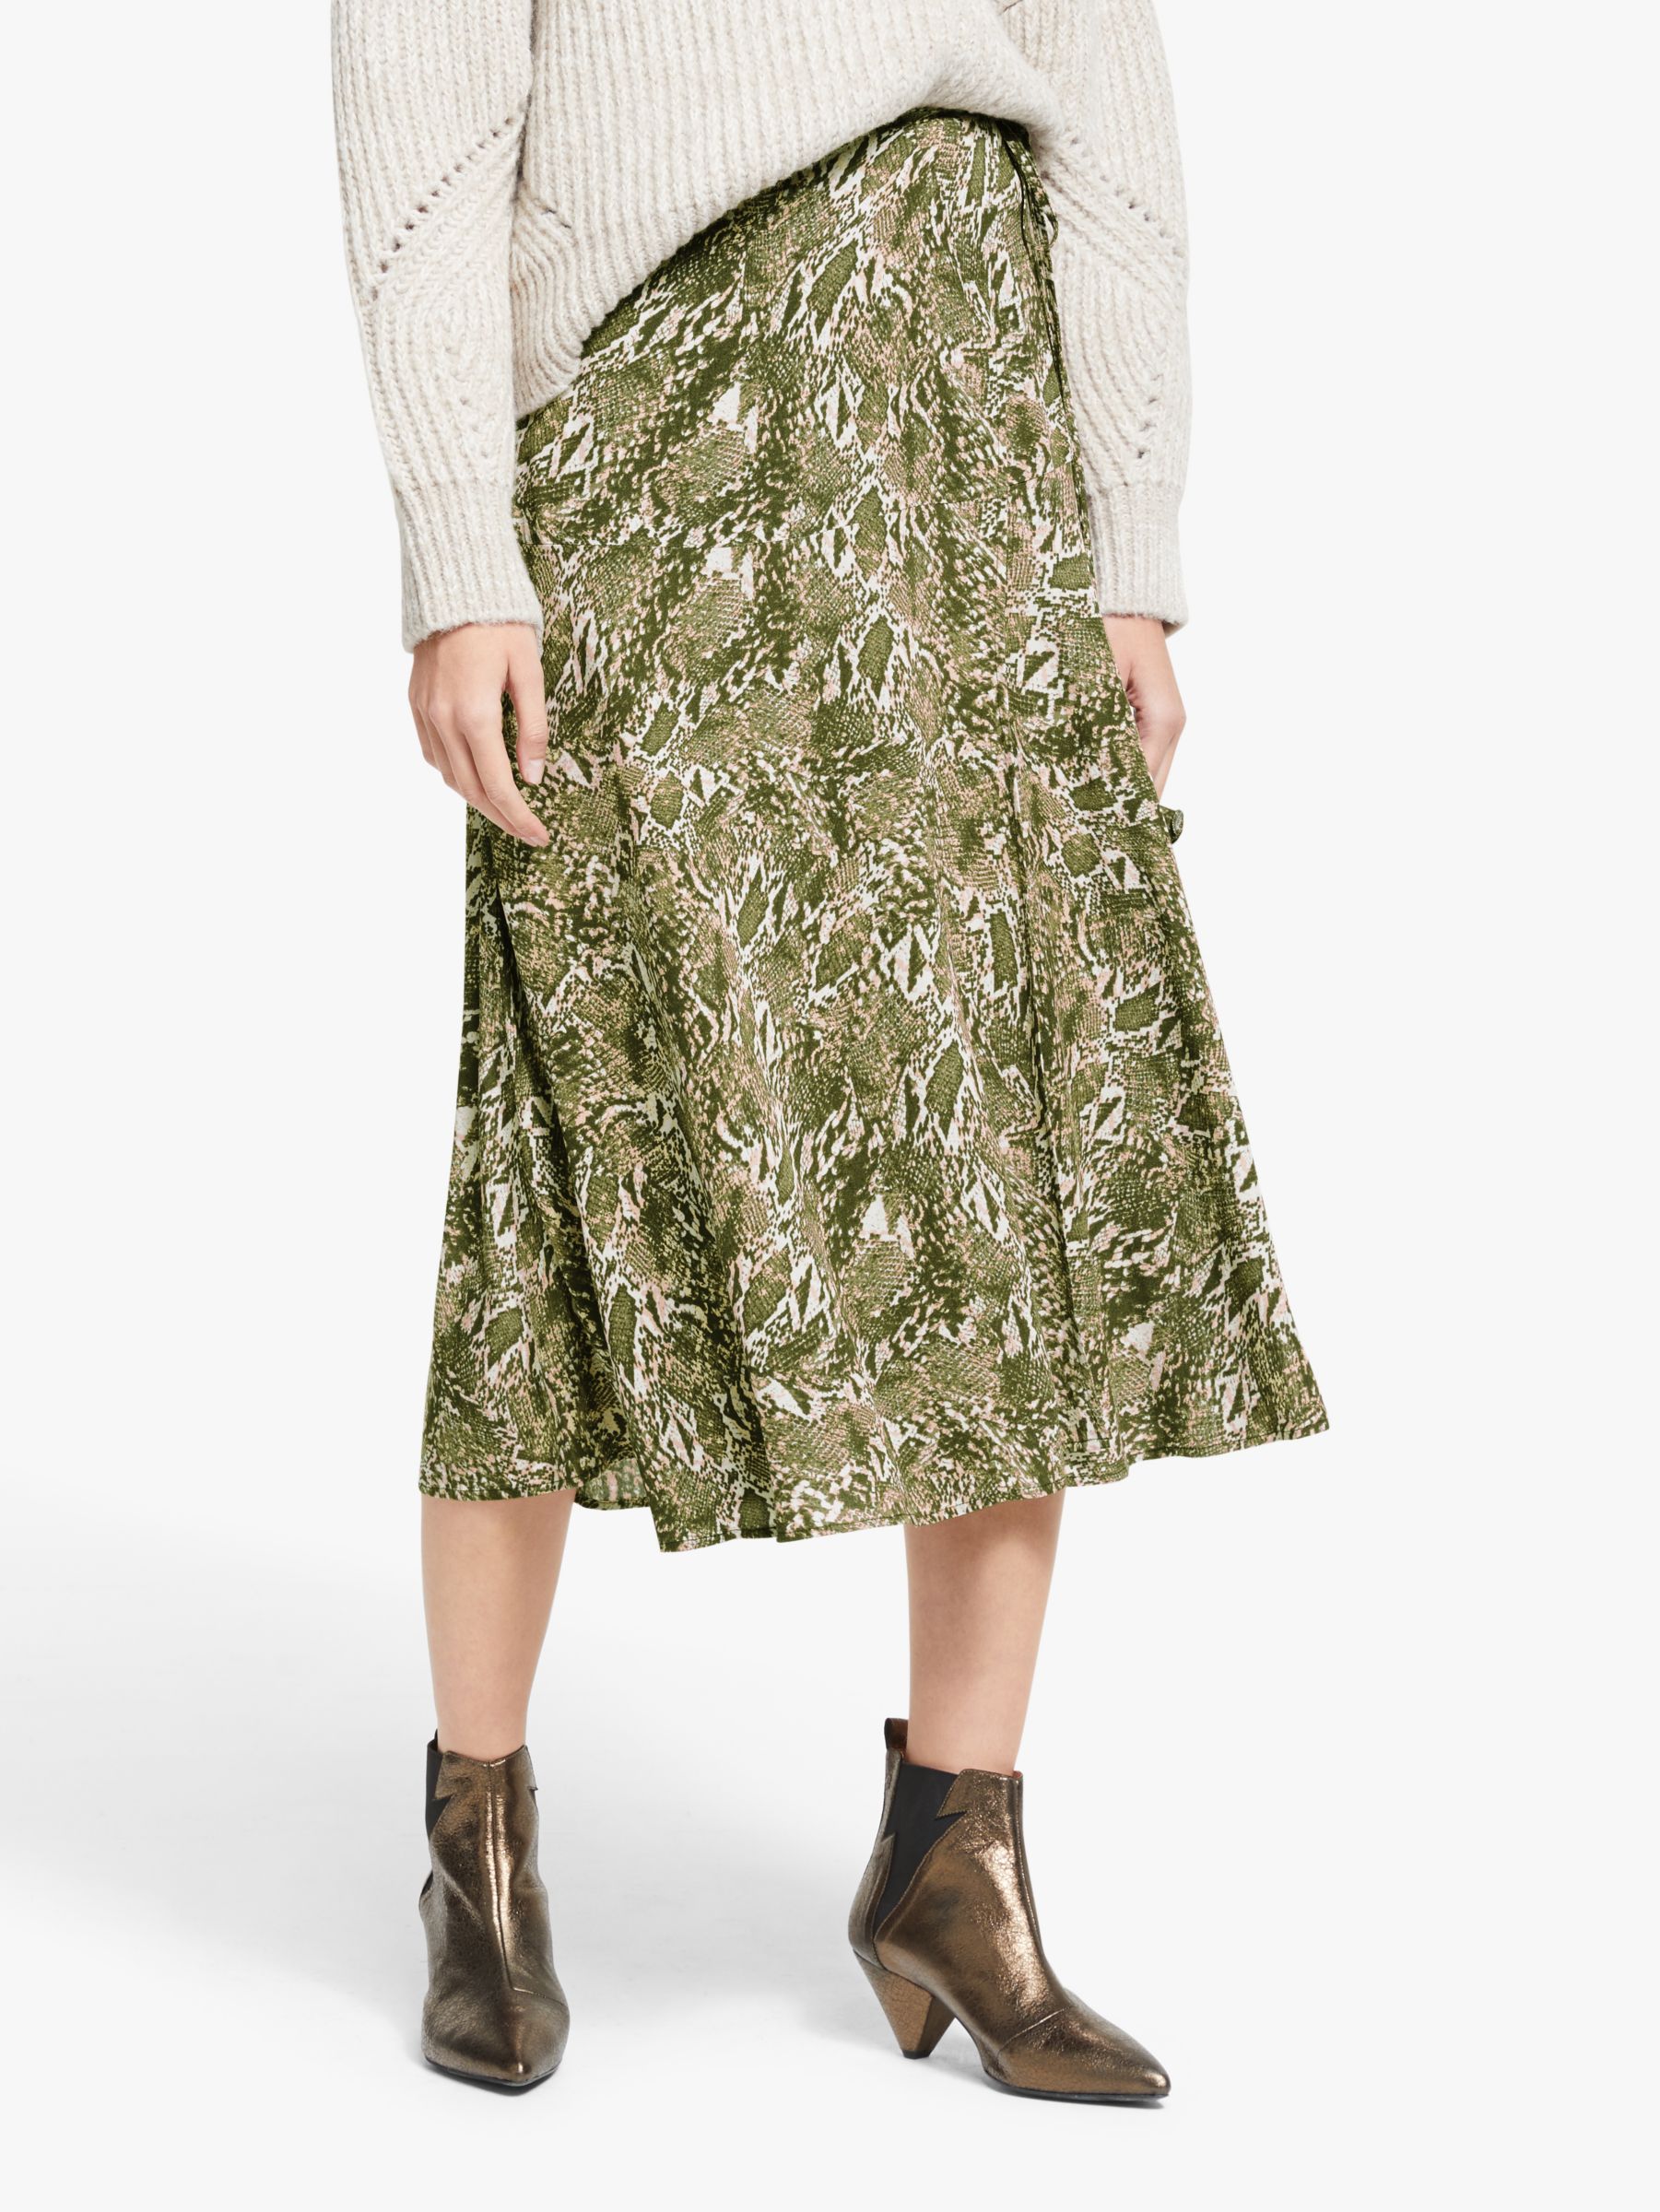 AND/OR Sasha Snake Print Skirt, Green